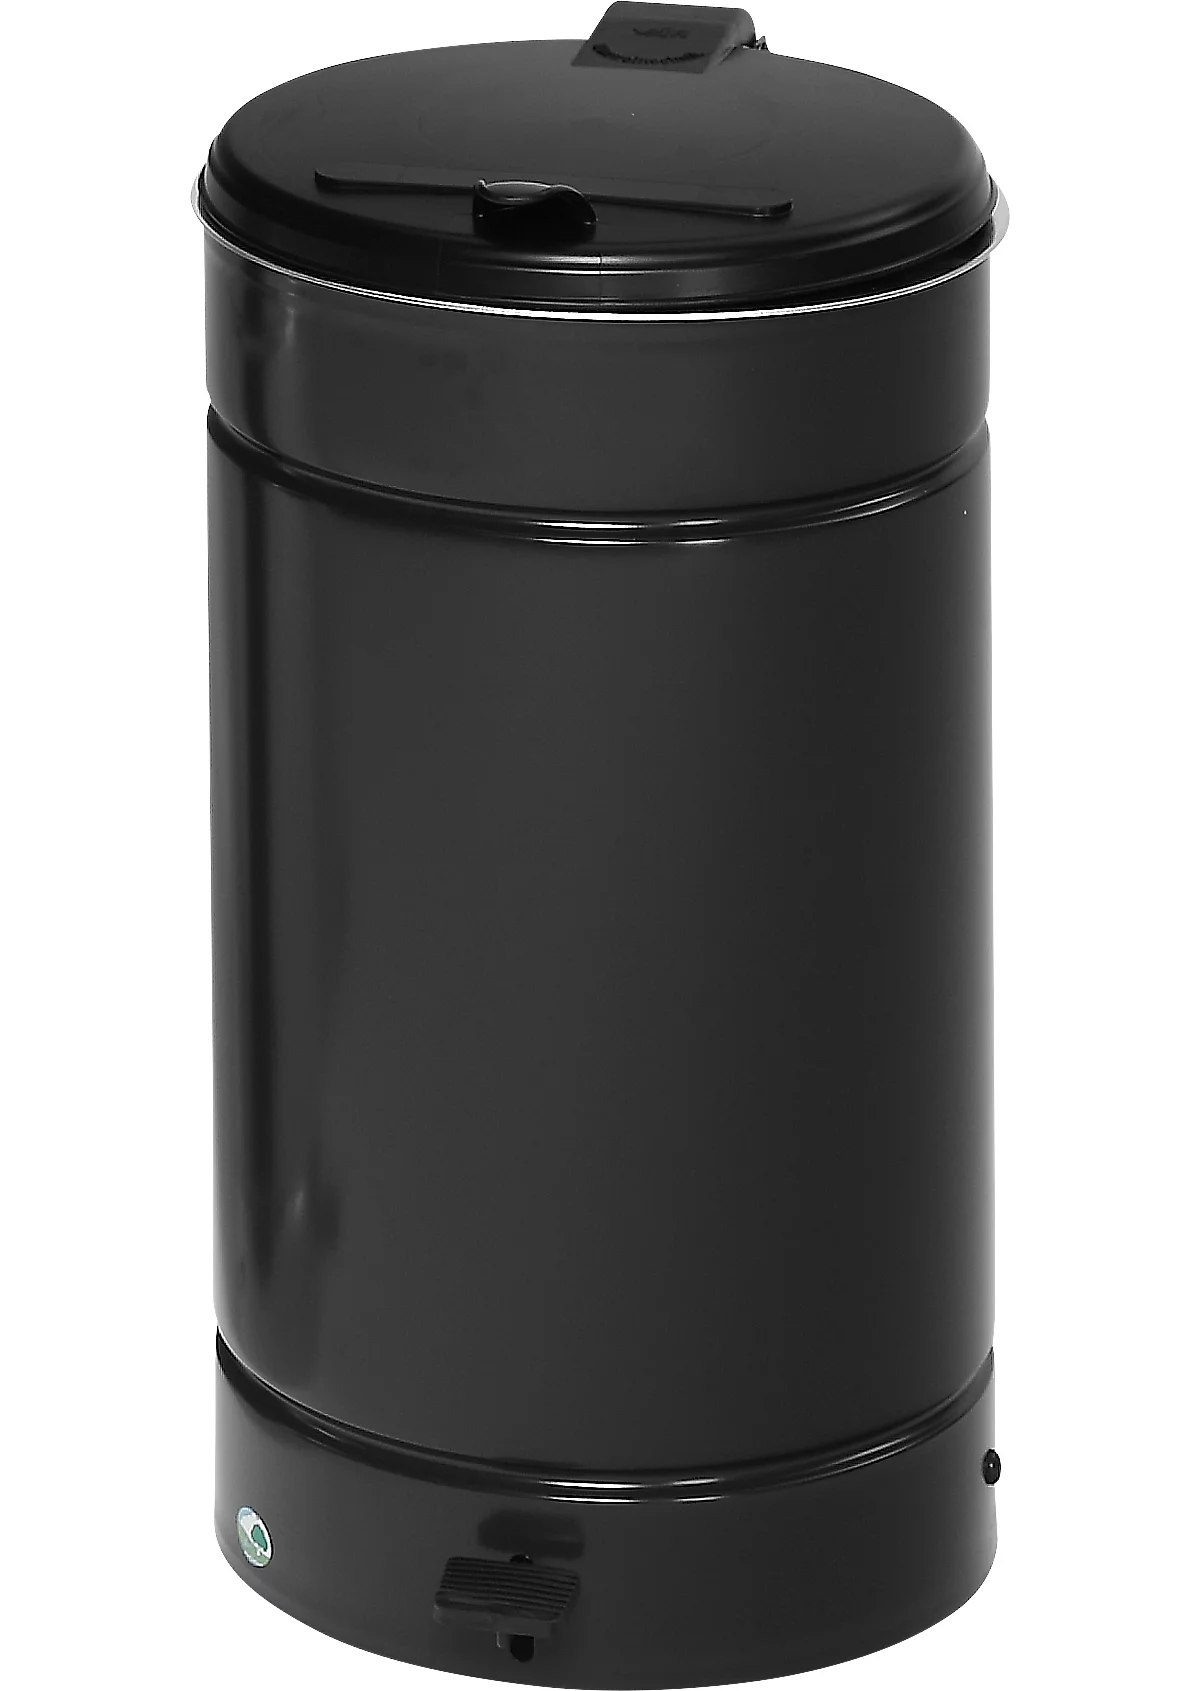 Poubelle rectangulaire en métal noir, élégante poubelle à pédale